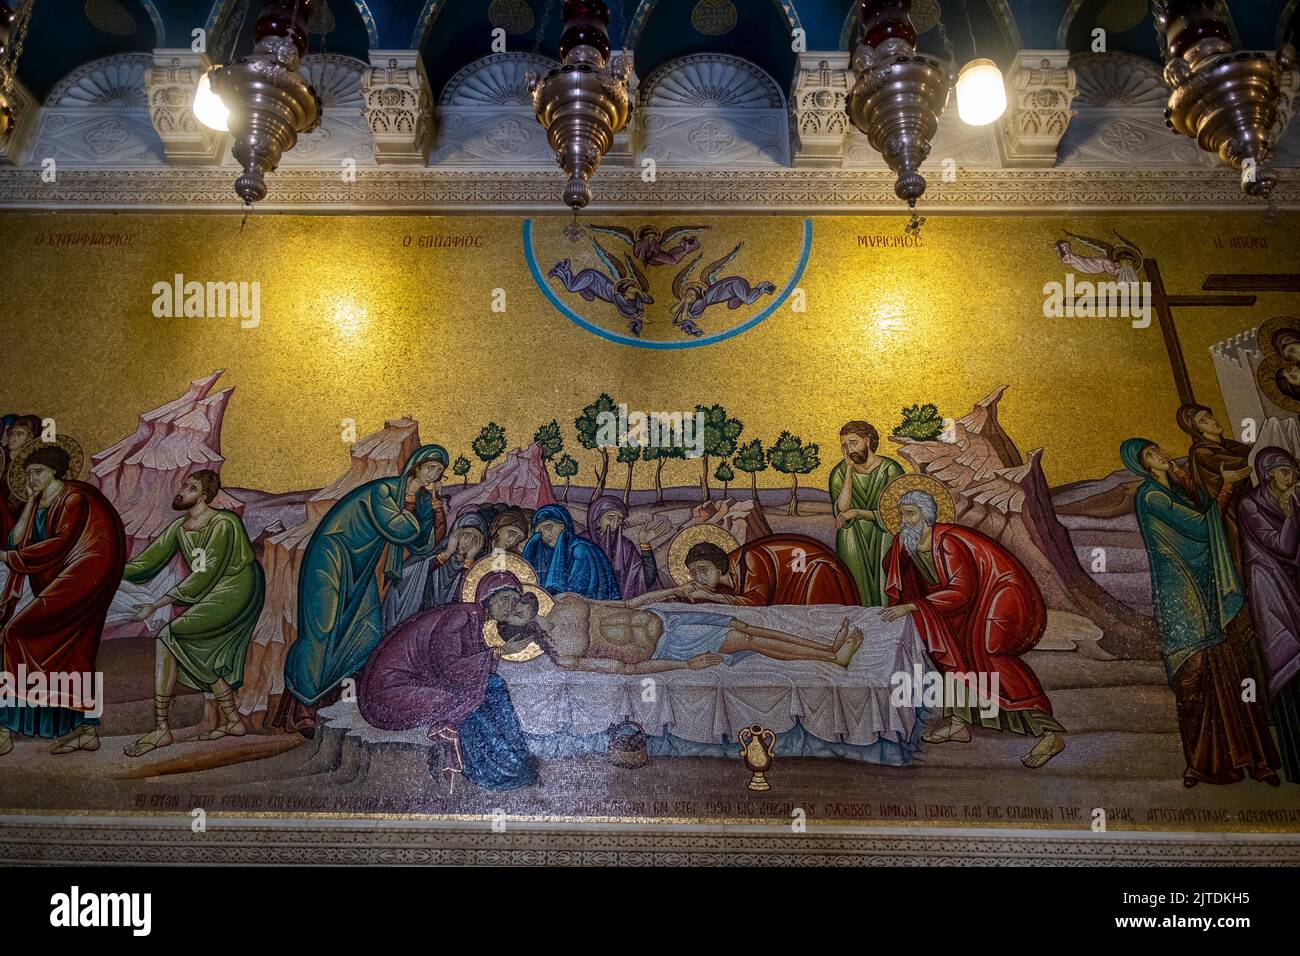 Une mosaïque de mur représentant le corps de Jésus Christ préparé après sa mort, face à la Pierre d'onction à l'intérieur de l'Église du Saint-Sépulcre dans la vieille ville chrétienne Jérusalem-est Israël Banque D'Images